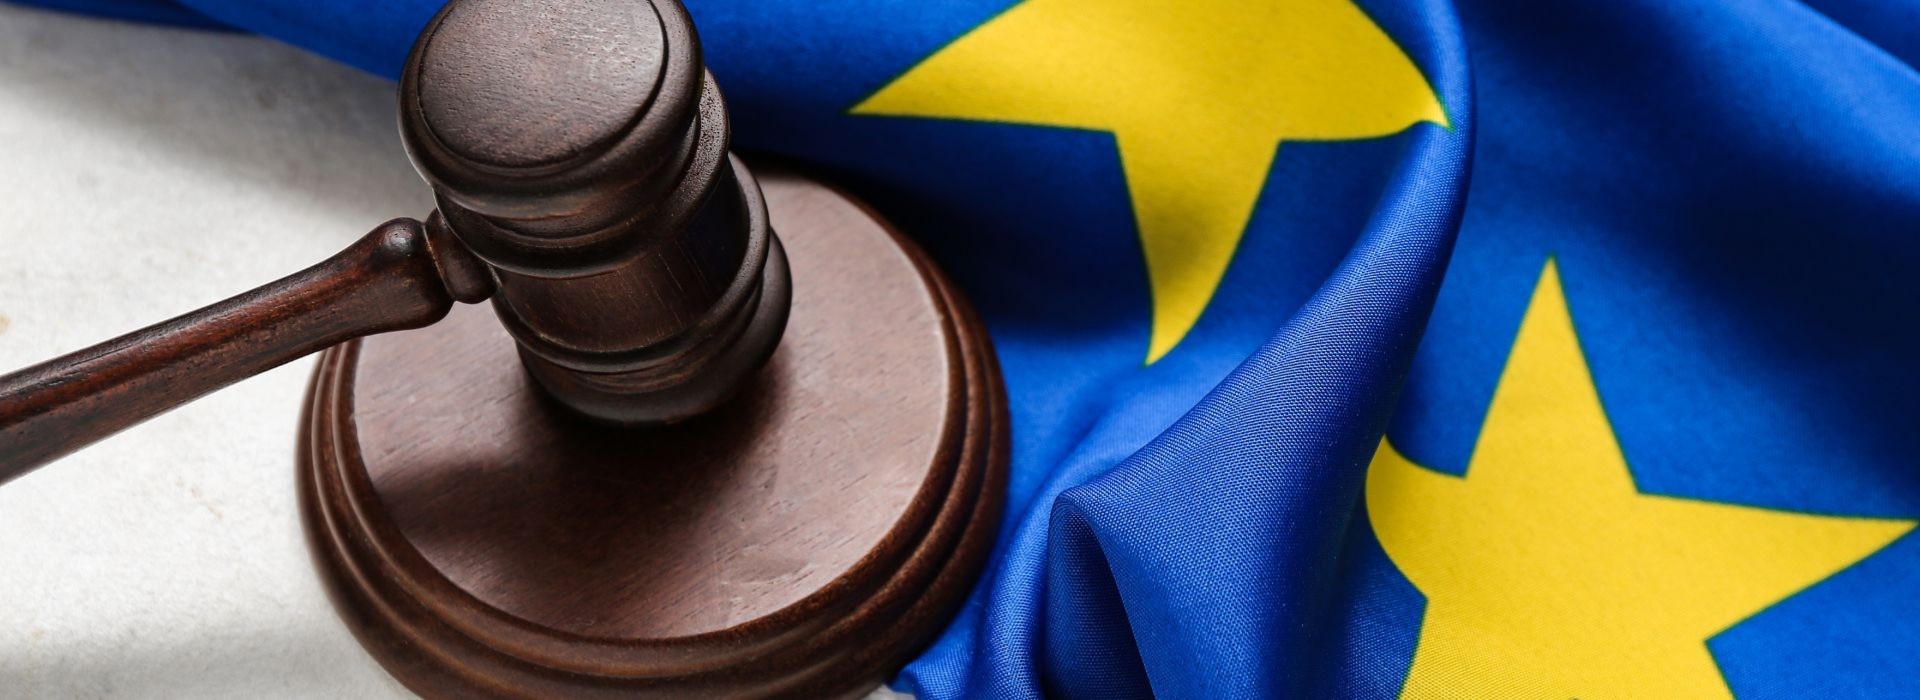 Nielegalna inwigilacja w Polsce. O precedensowym wyroku Europejskiego Trybunału Praw Człowieka